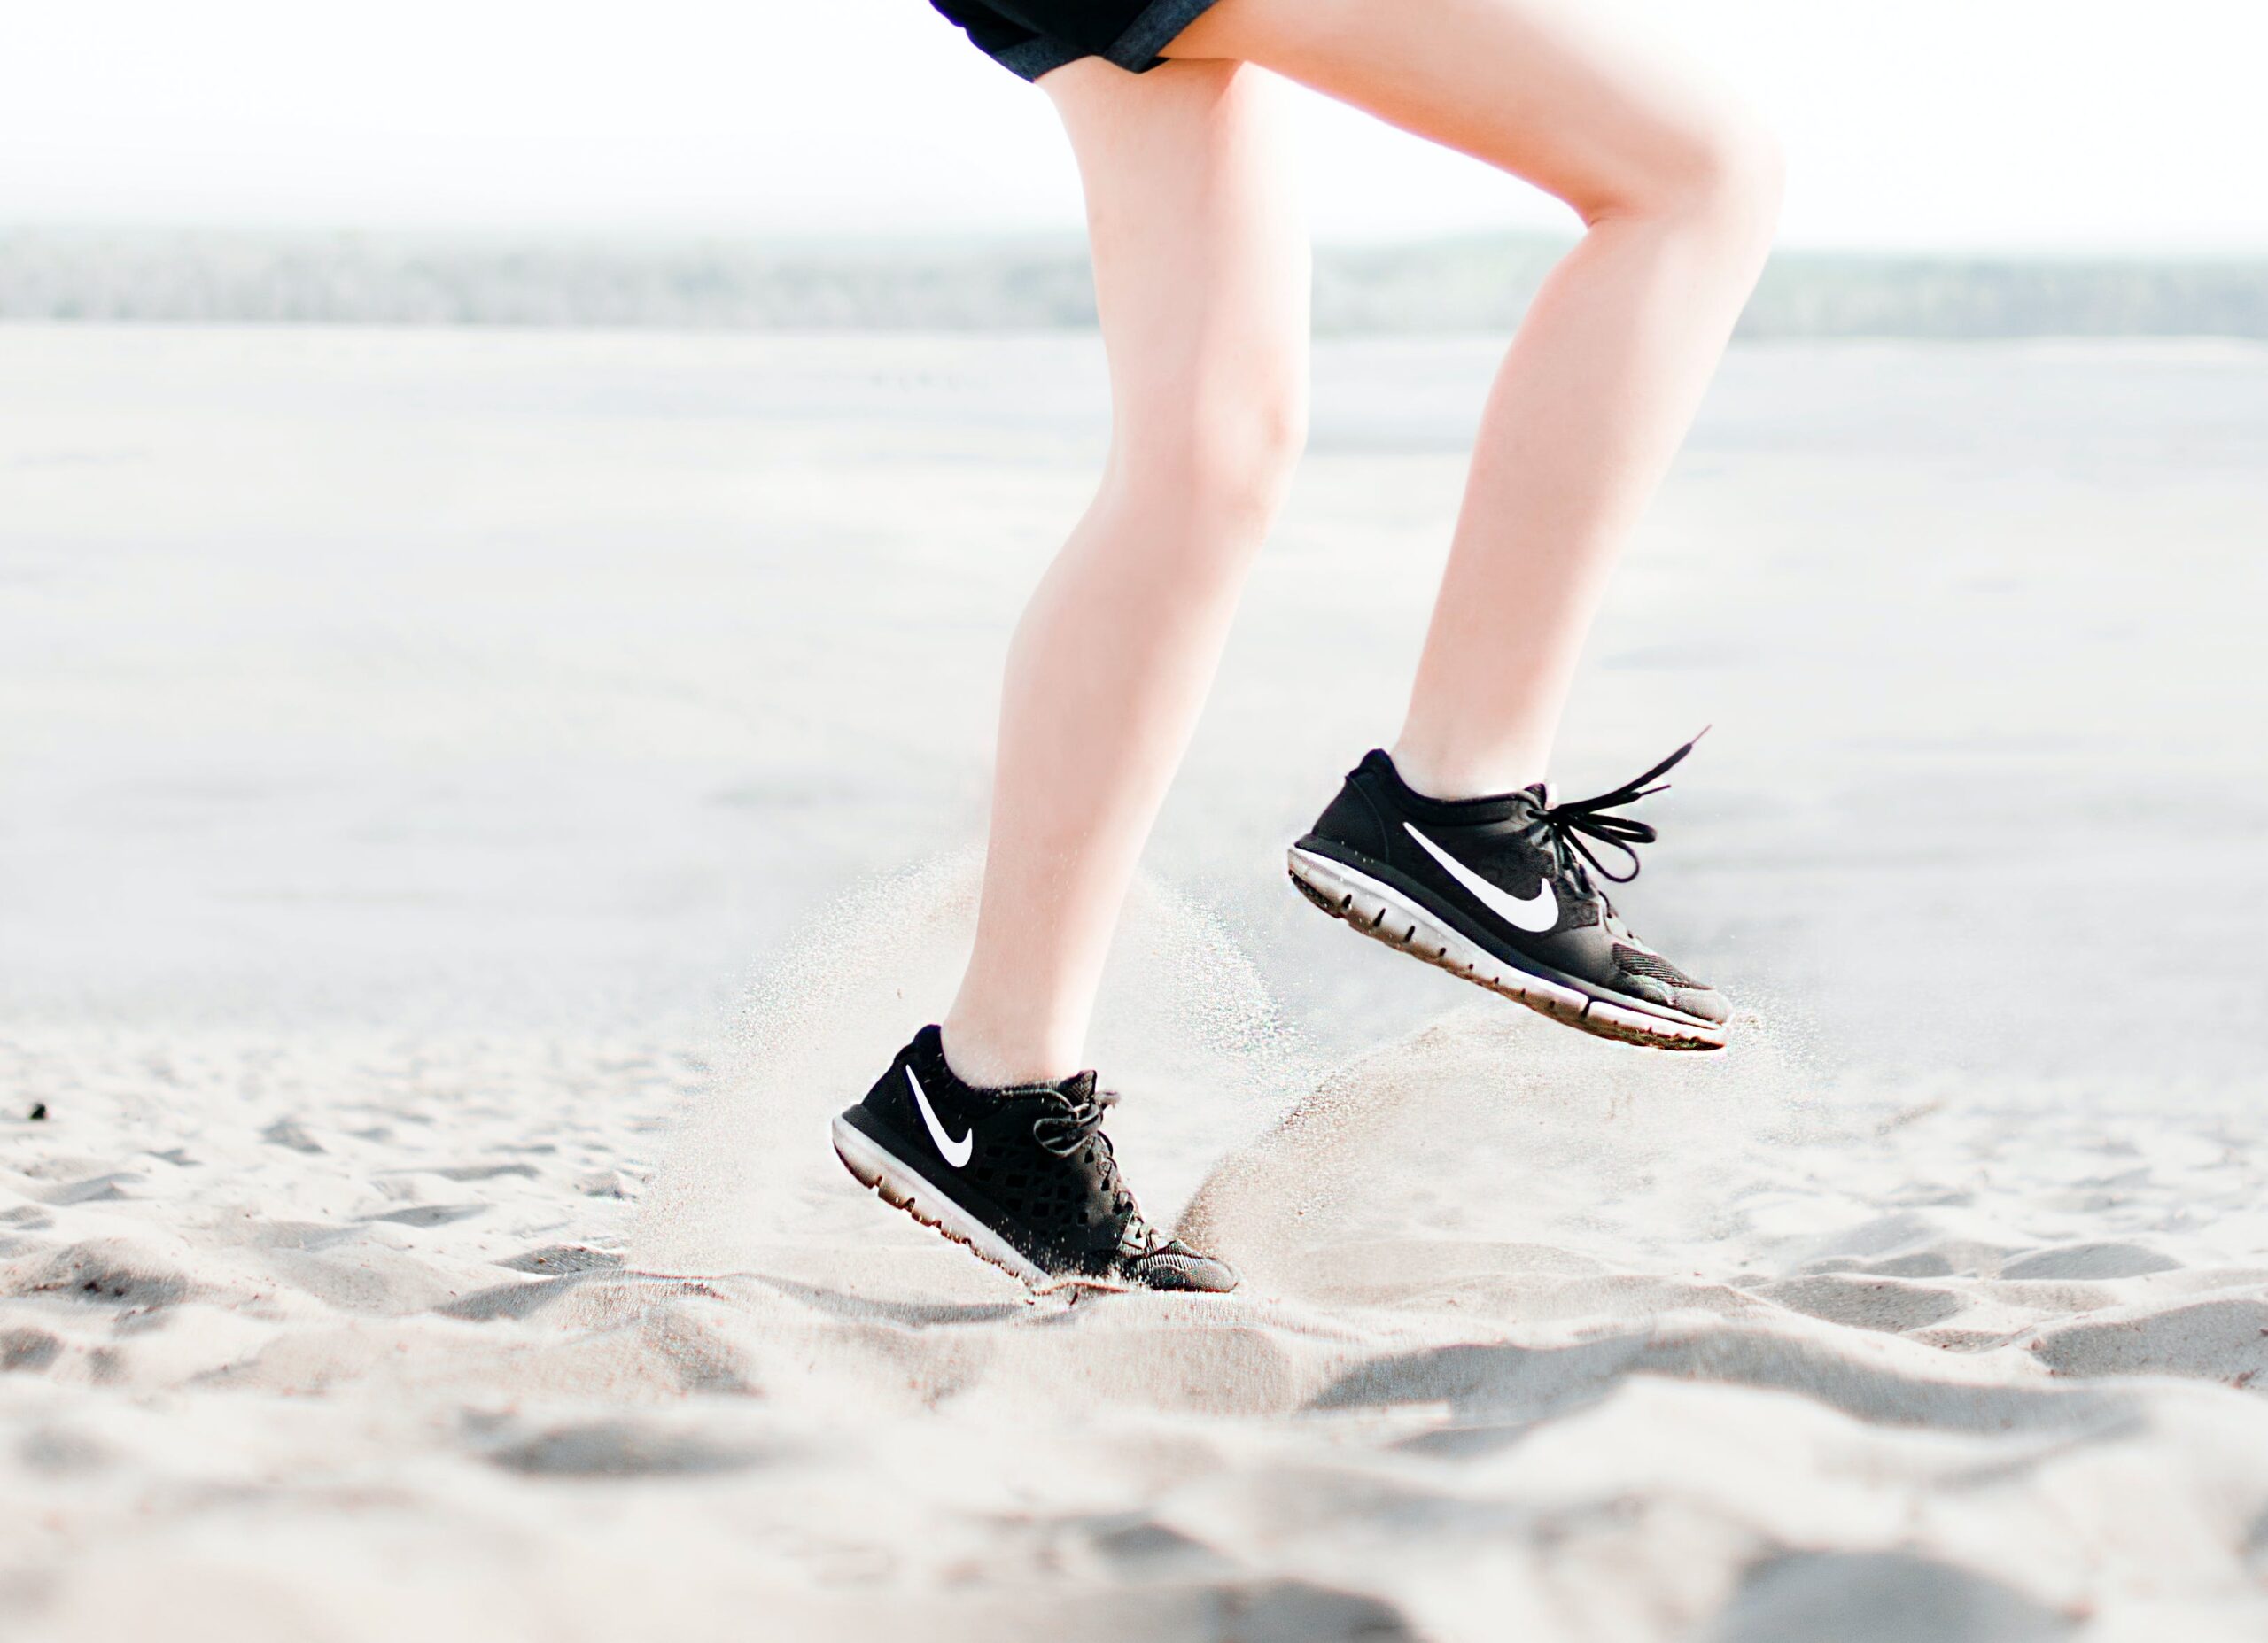 Wybór butów do biegania po asfalcie – poradnik dla biegaczy